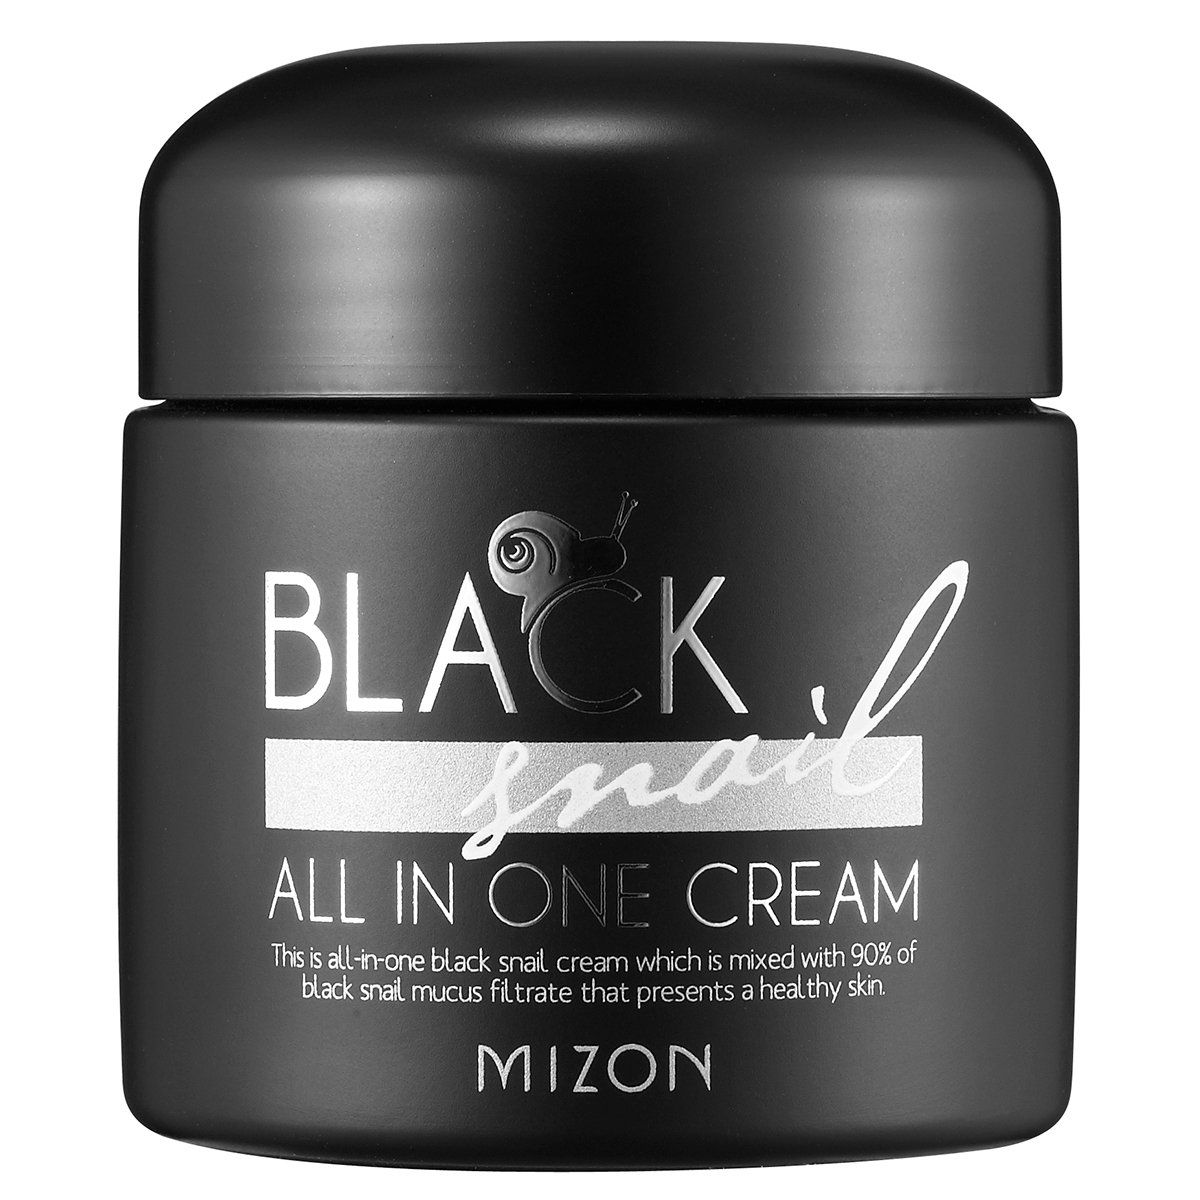 Black Snail All In One Cream 75 ml Mizon K-Beauty